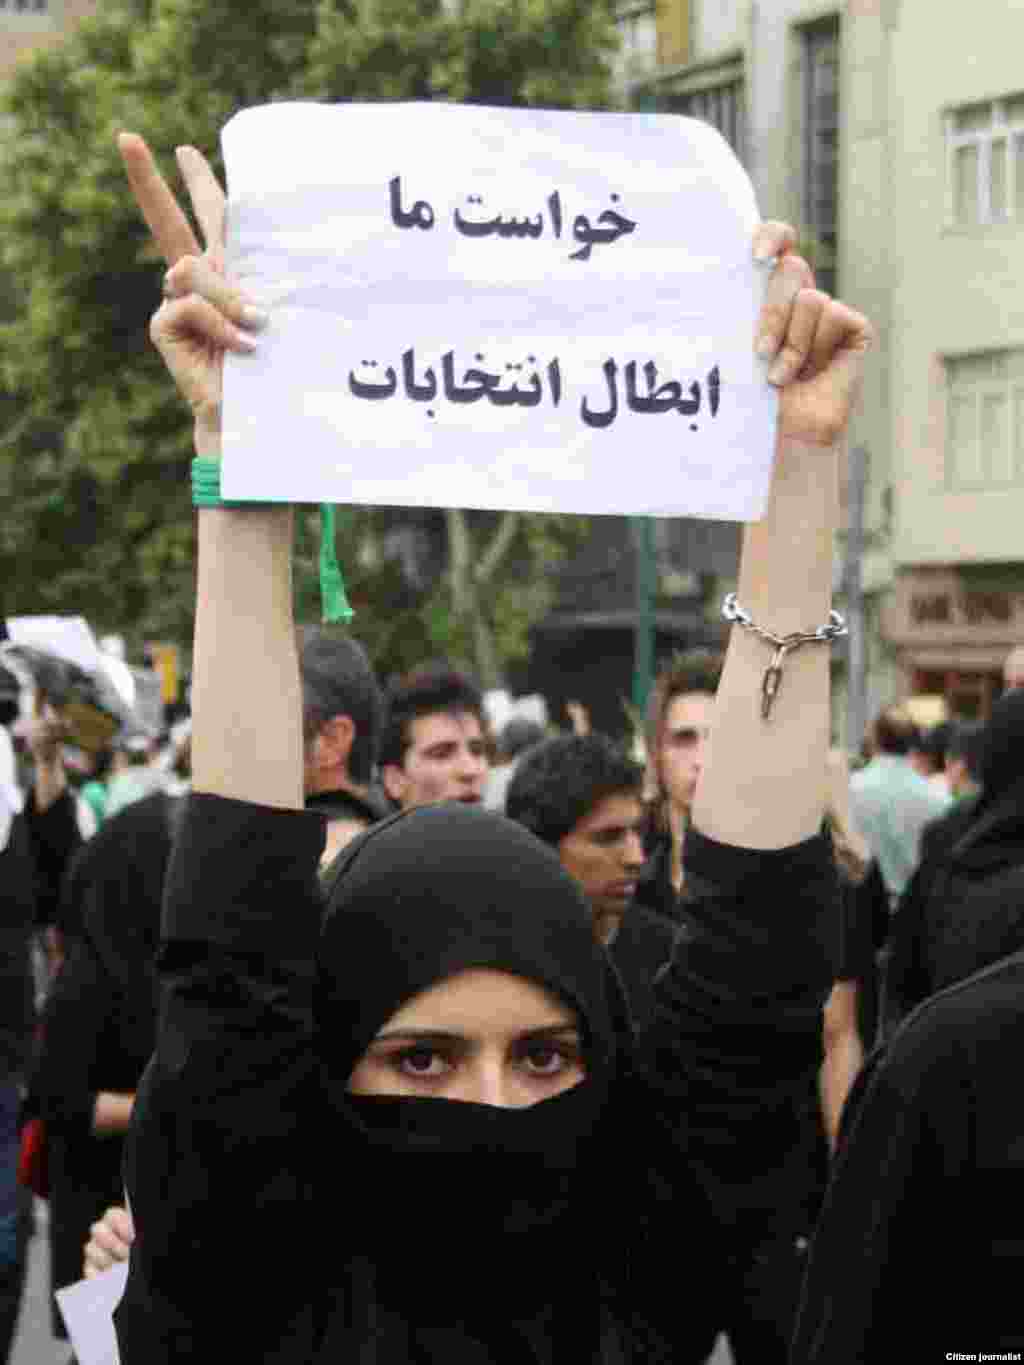 მუსავის მომხრეები ხმების ხელახლა დათვლას მოითხოვენ - ირანში საპრეზიდენტო არჩევნების შემდეგ დაწყებულ საპროტესტო გამოსვლებში აქტიურად მონაწილეობენ ქალები